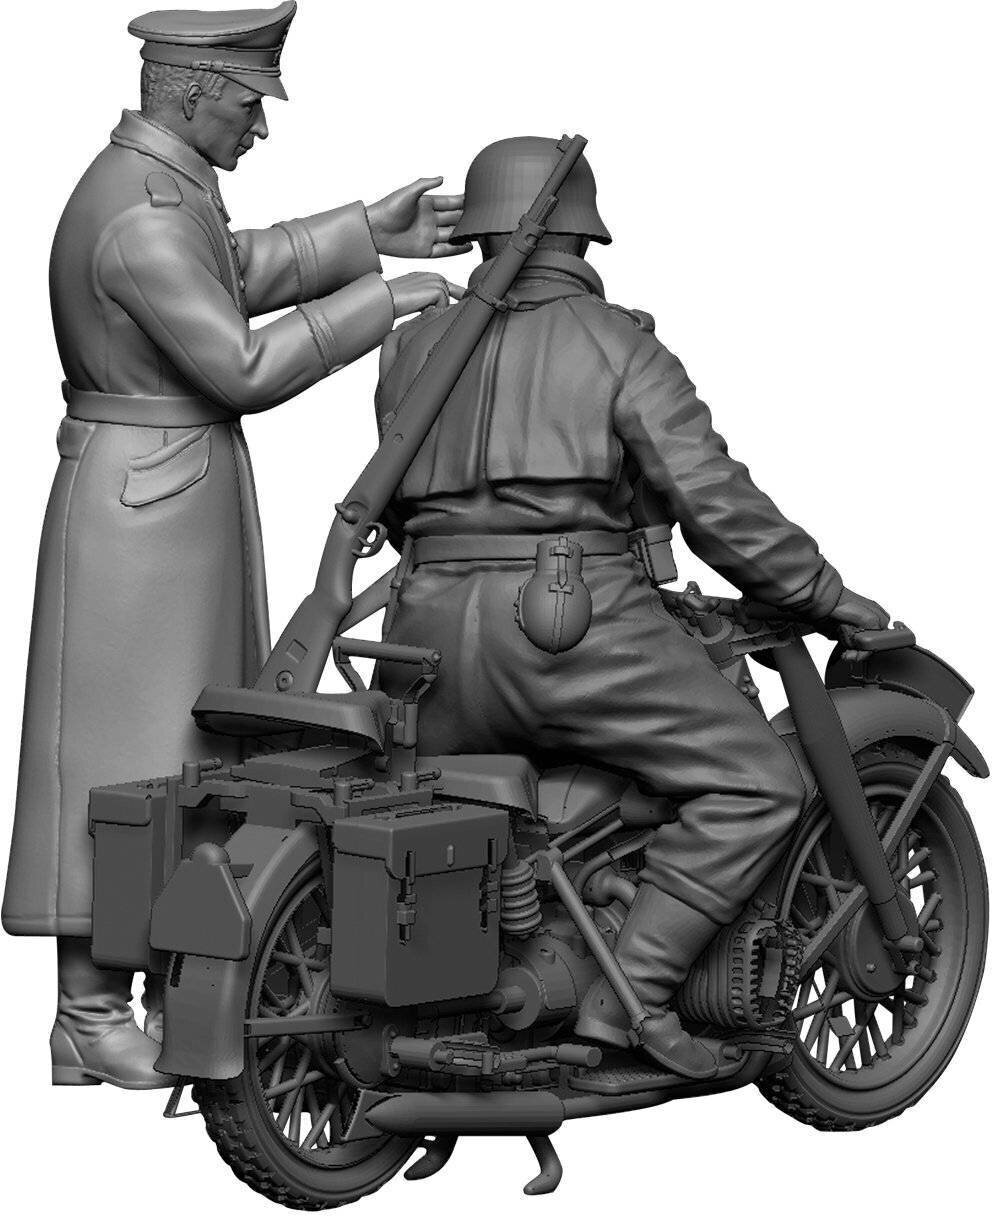 Немецкий тяжелый мотоцикл Р-12 с водителем и офицером (3632) - фото №8